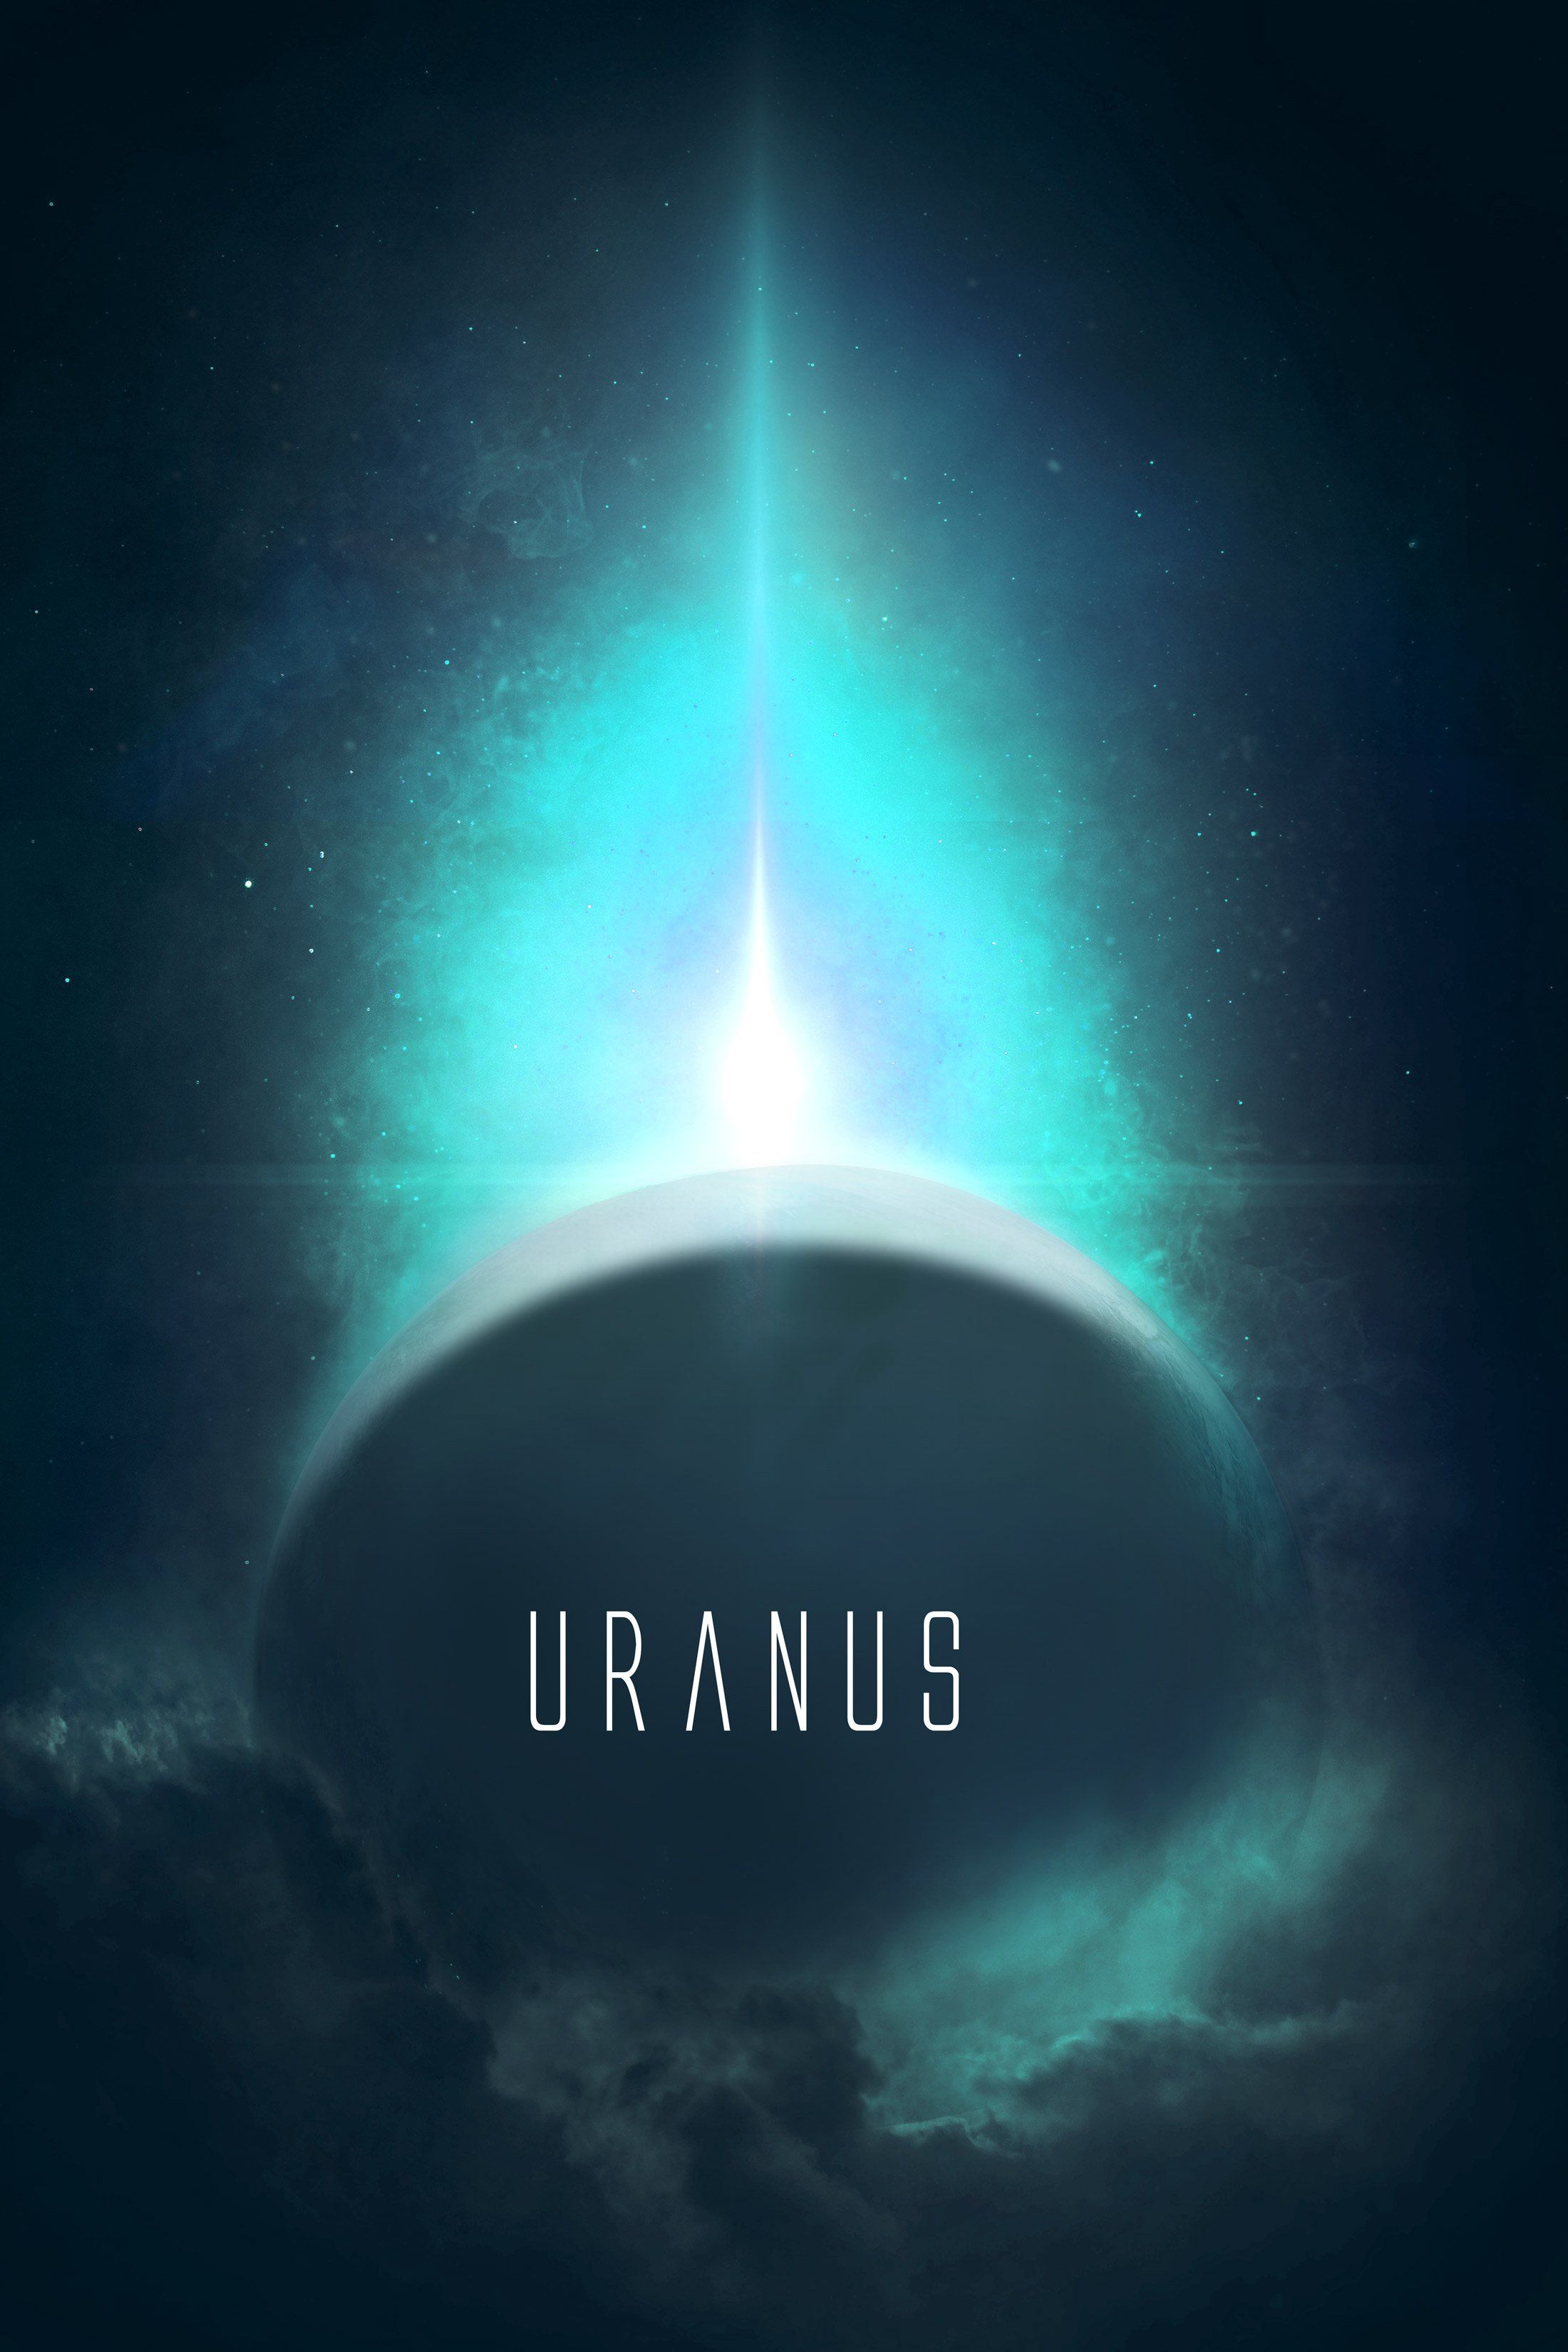 Uranus Planet Wallpapers - Wallpaper Cave